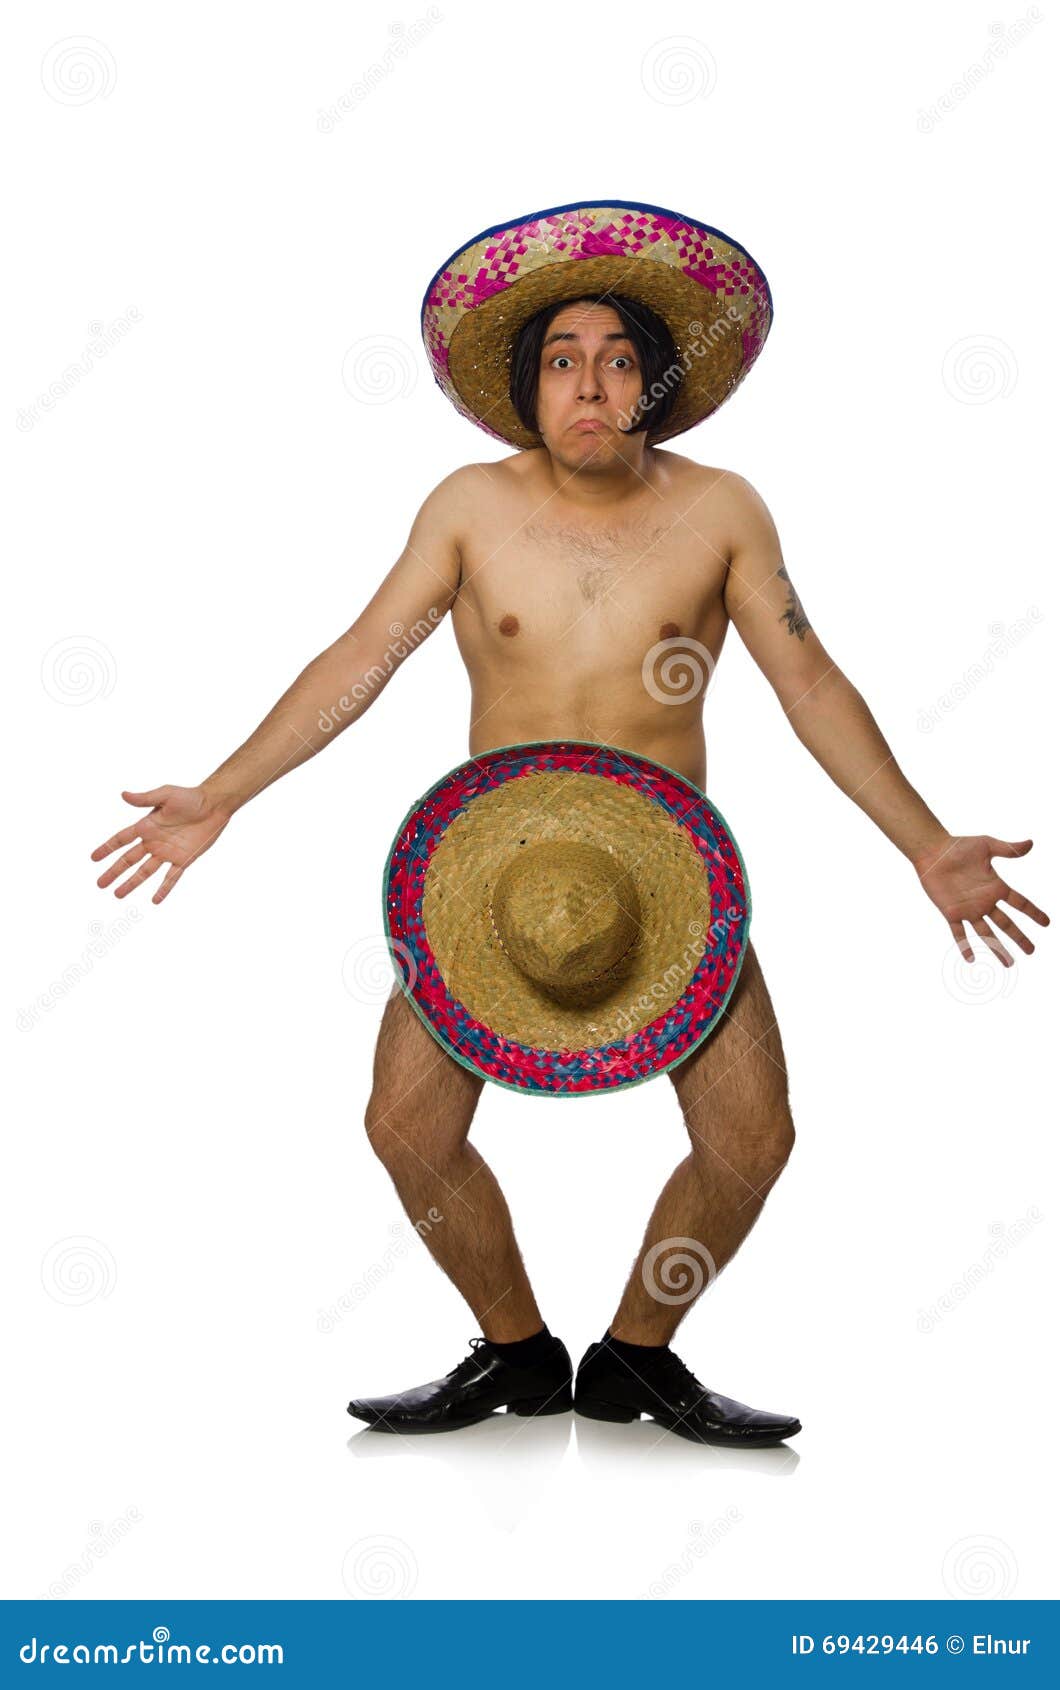 El Hombre Mexicano Desnudo Aislado En Blanco Foto de archivo - Imagen de me...